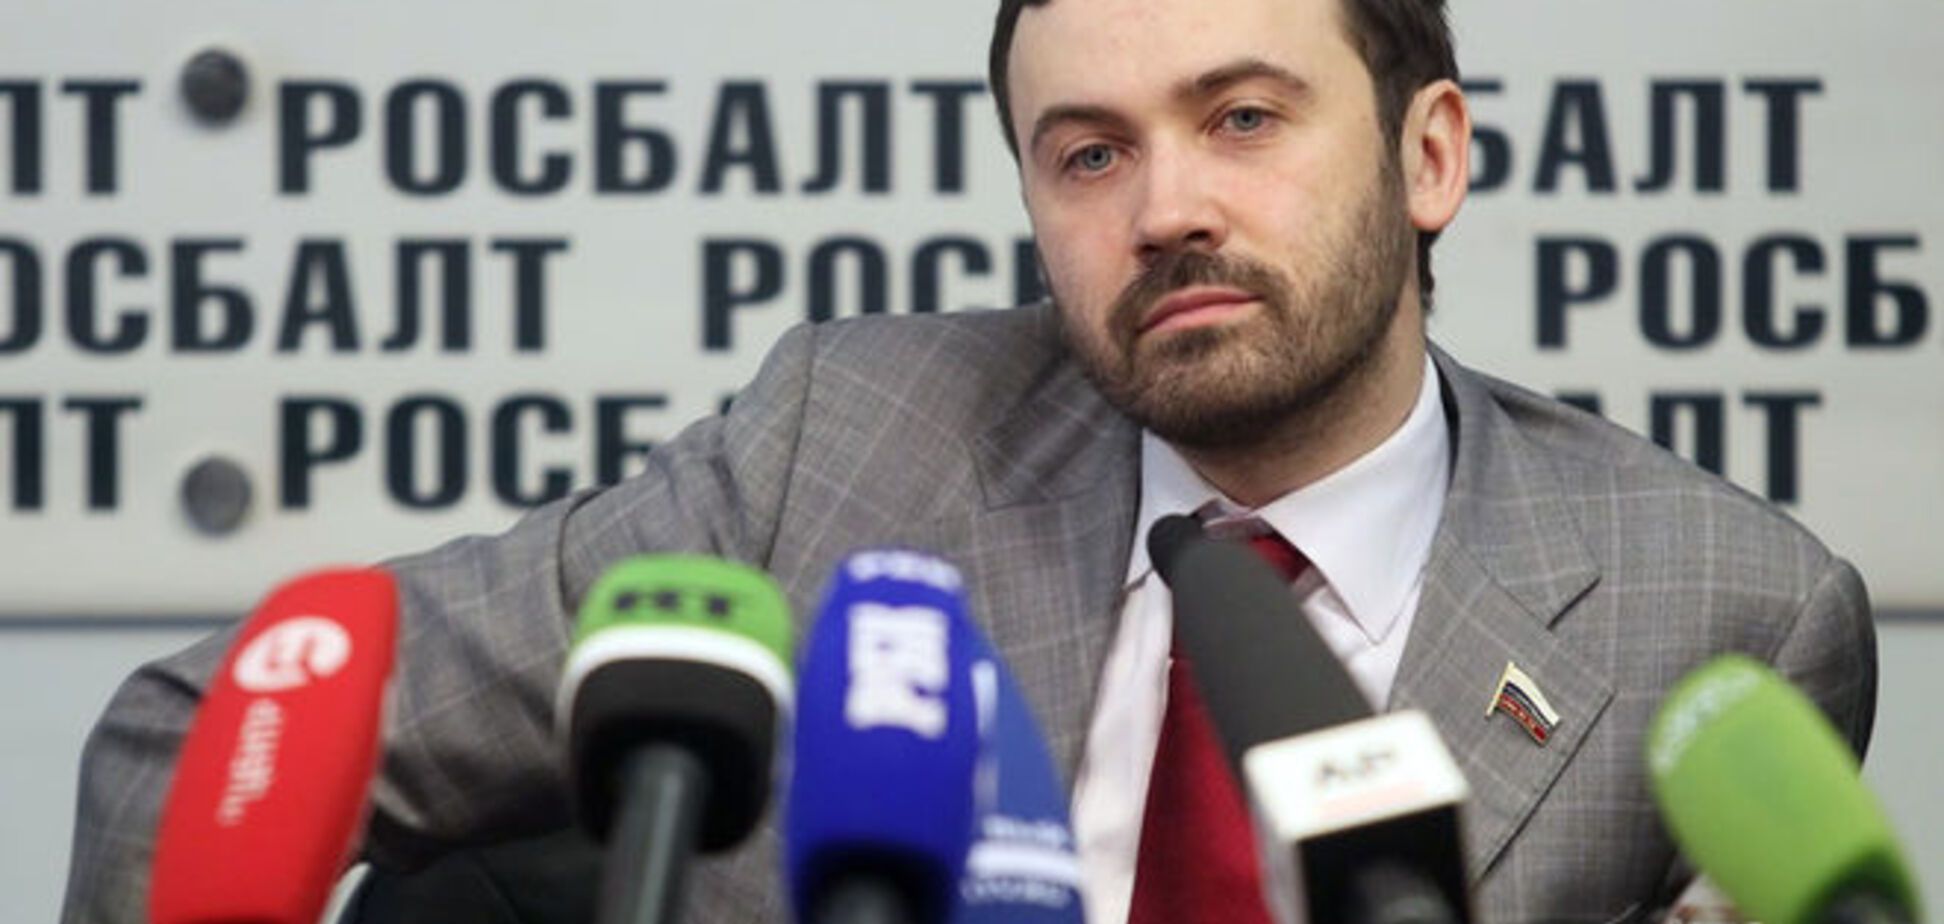 'Ты следующий, с*ка!': депутат Госдумы рассказал об угрозах после убийства Немцова